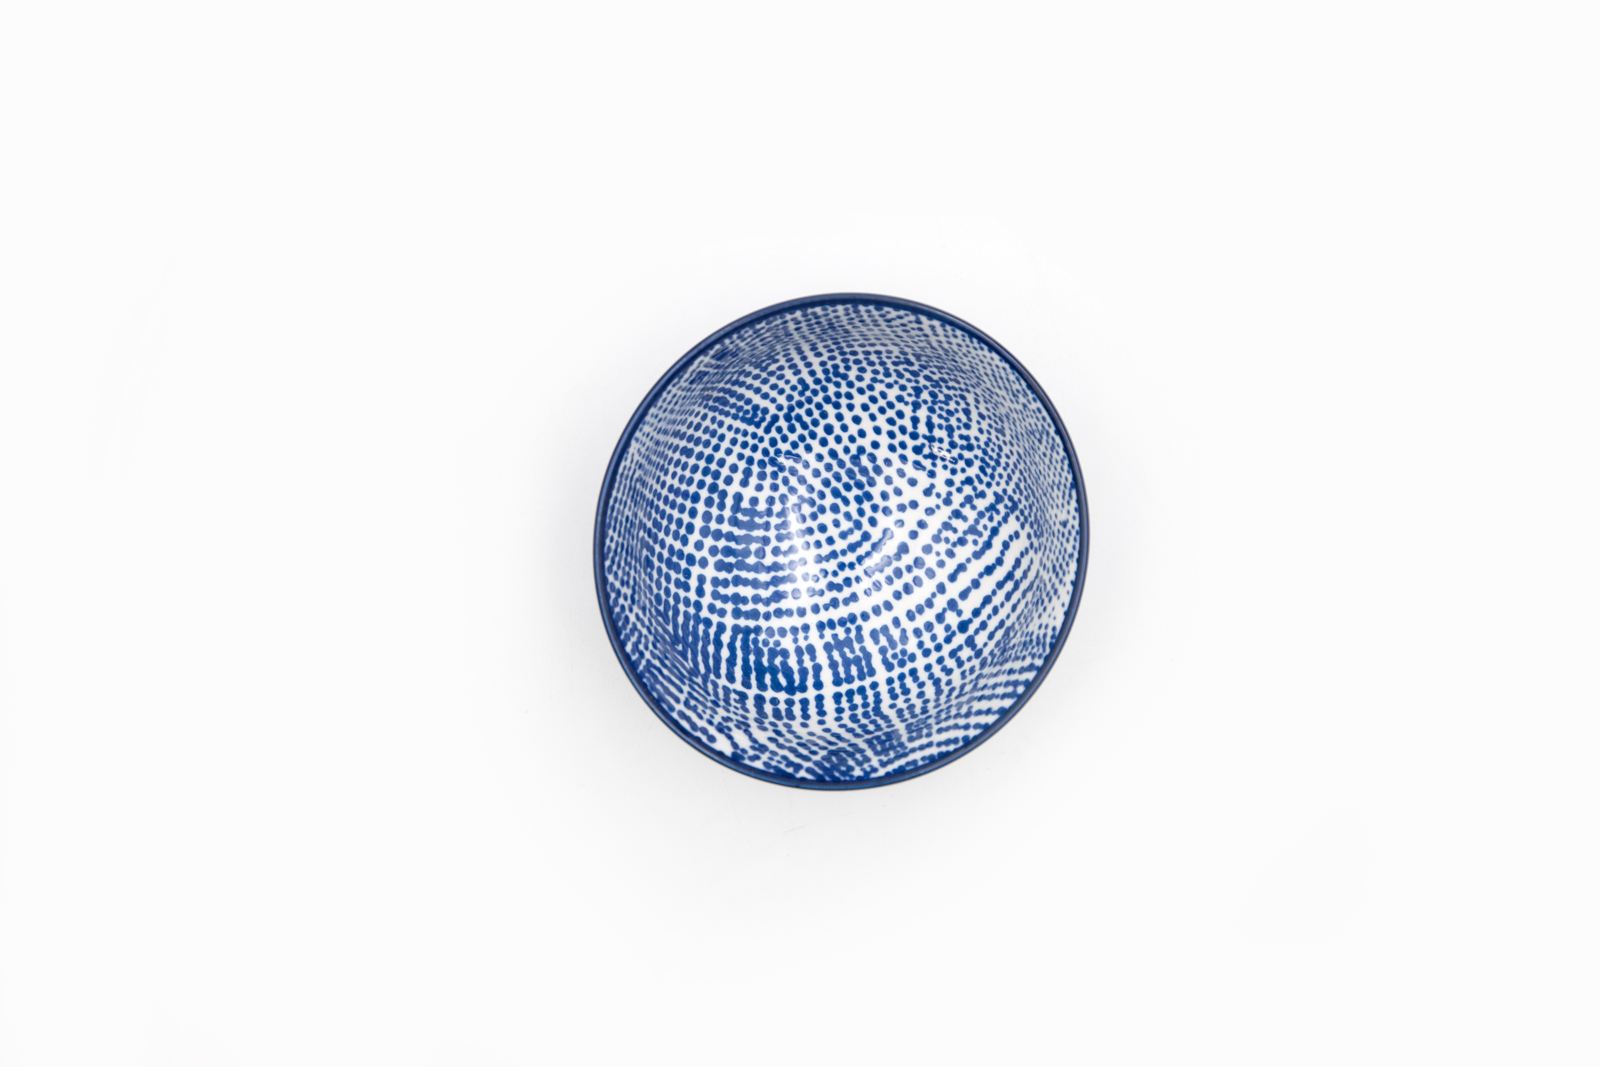 Schale Dipschale Keramik blau Landhausstil